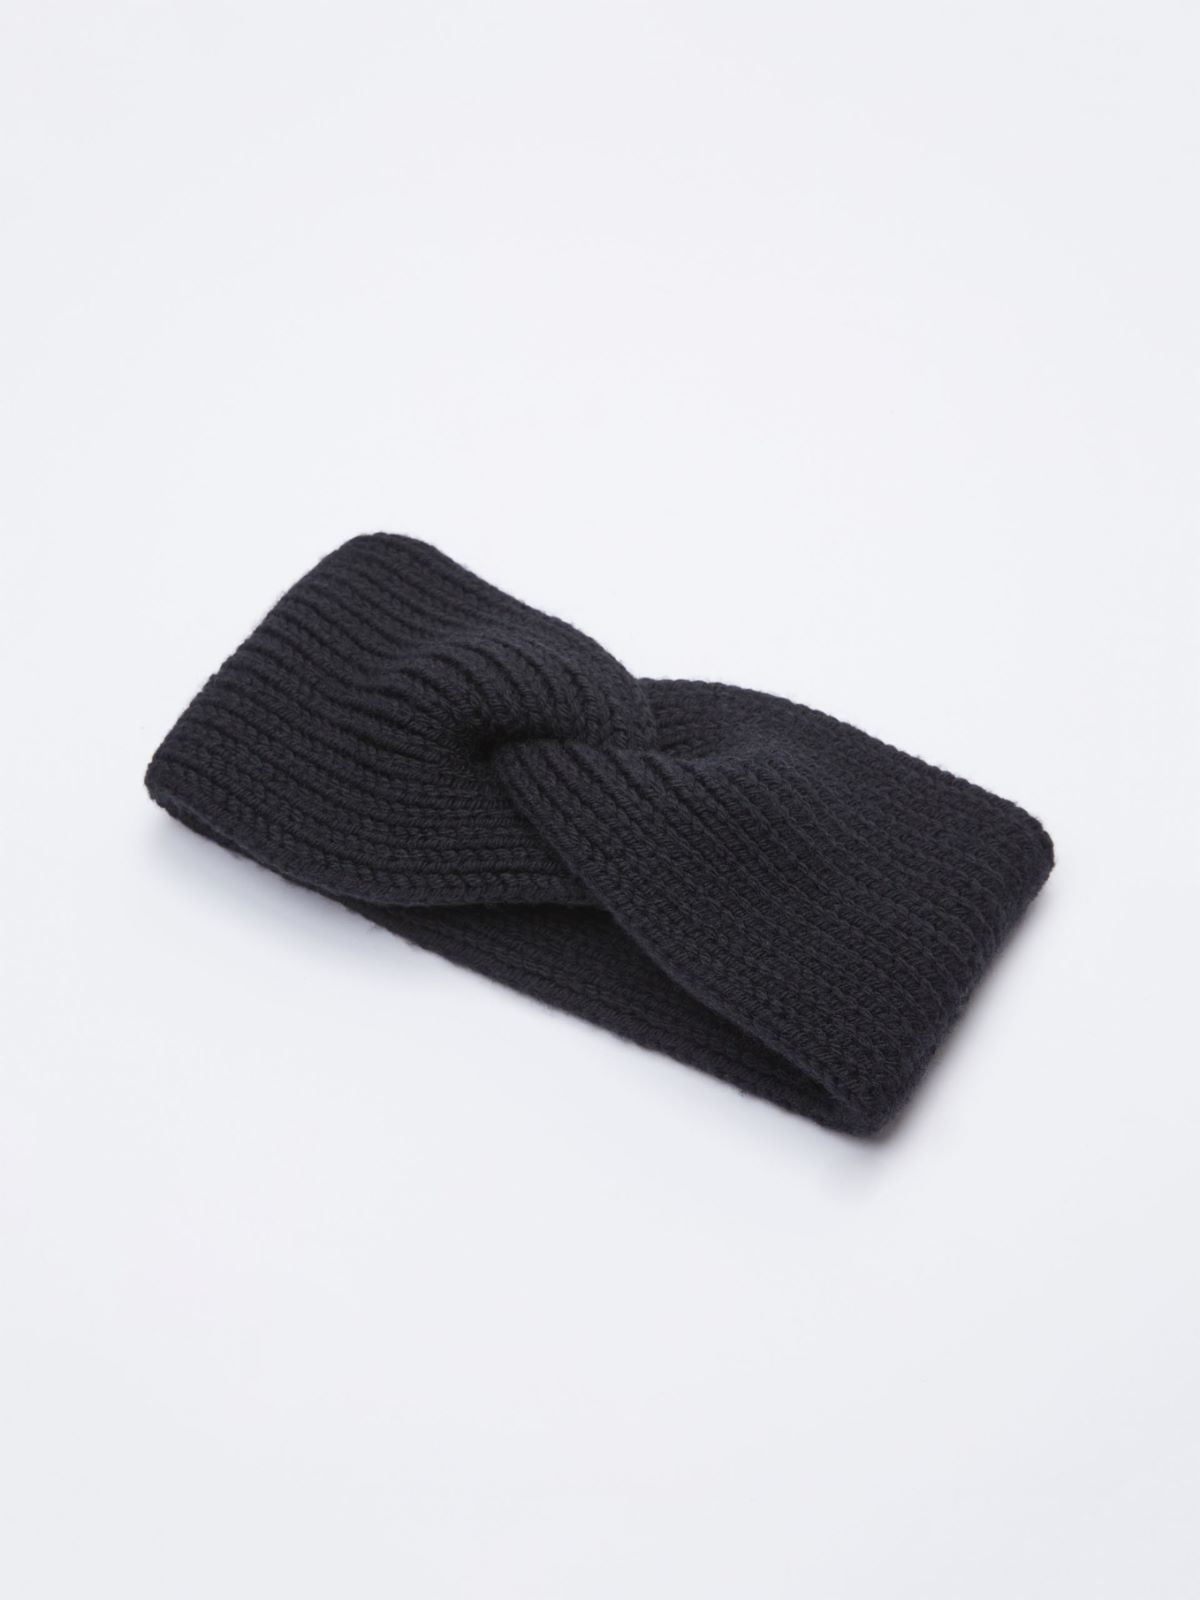 Braided headband - BLACK - Weekend Max Mara